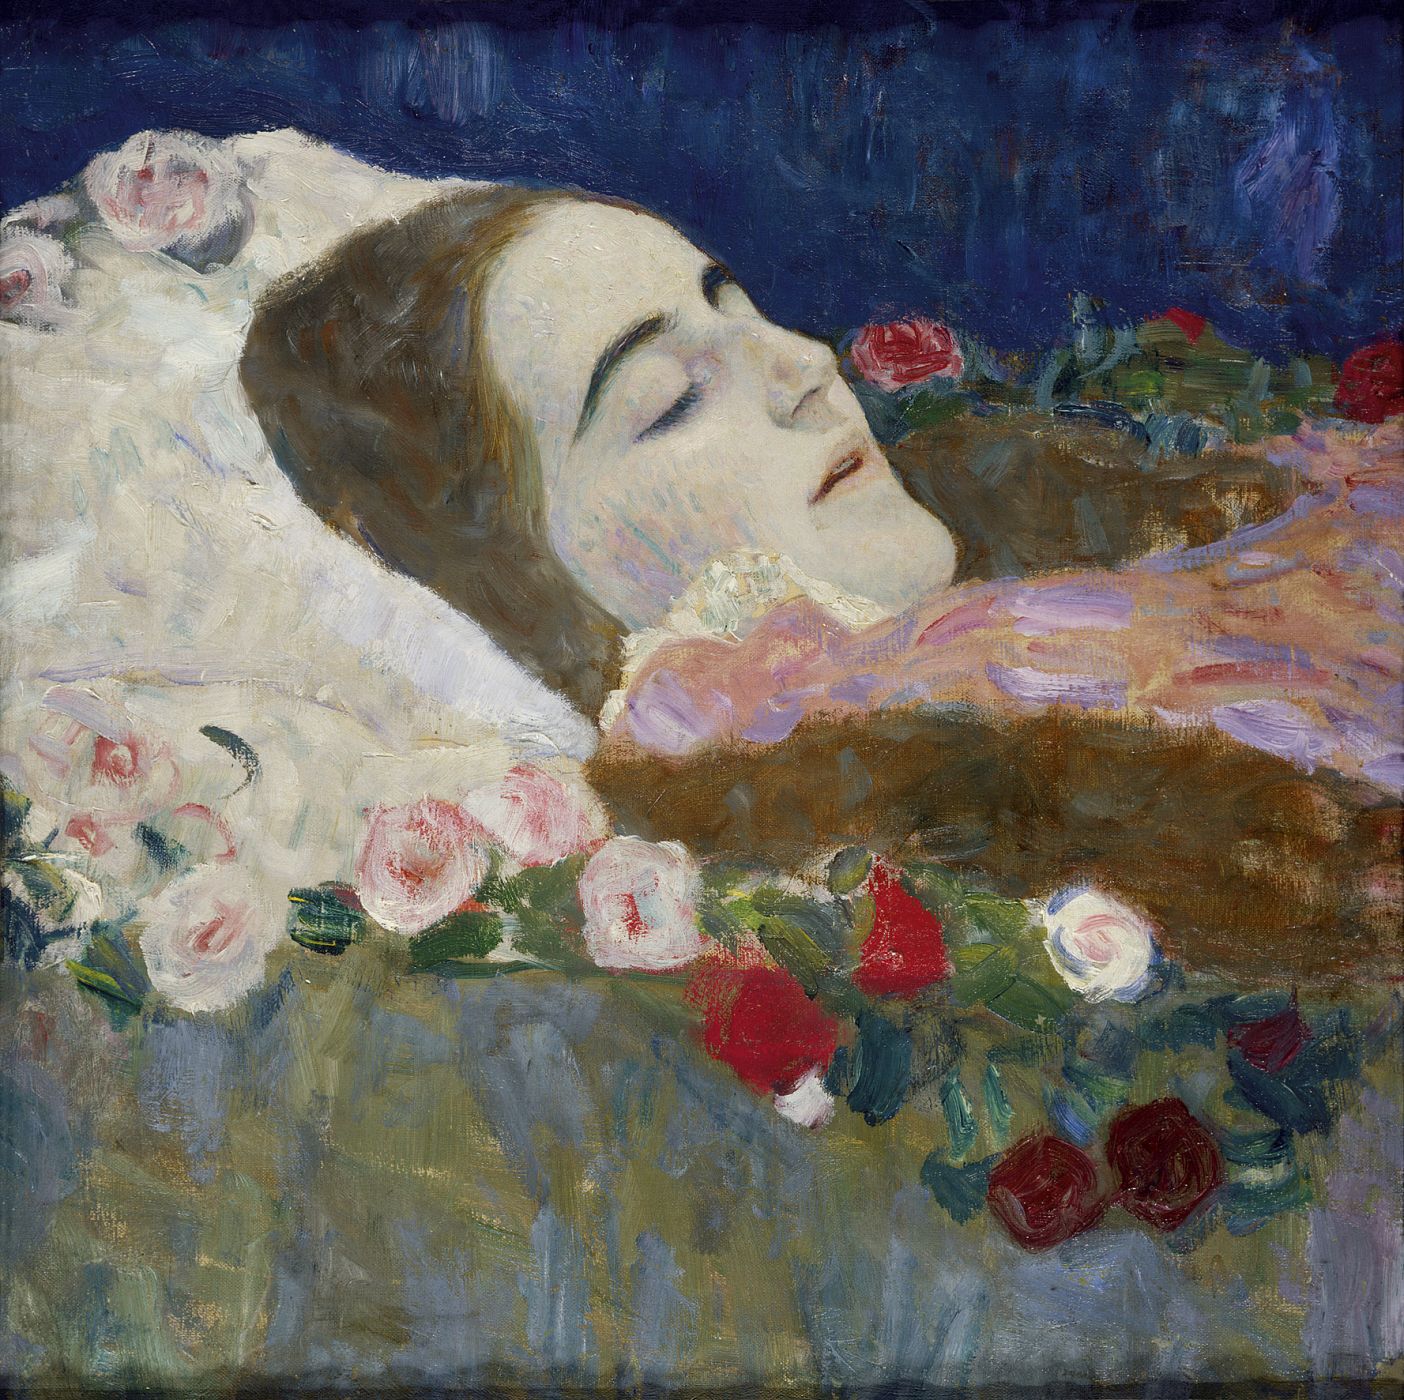 'Ria Munk en su lecho de muerte' (1912), de Gustav Klimt, incluida en la muestra de la National Gallery.